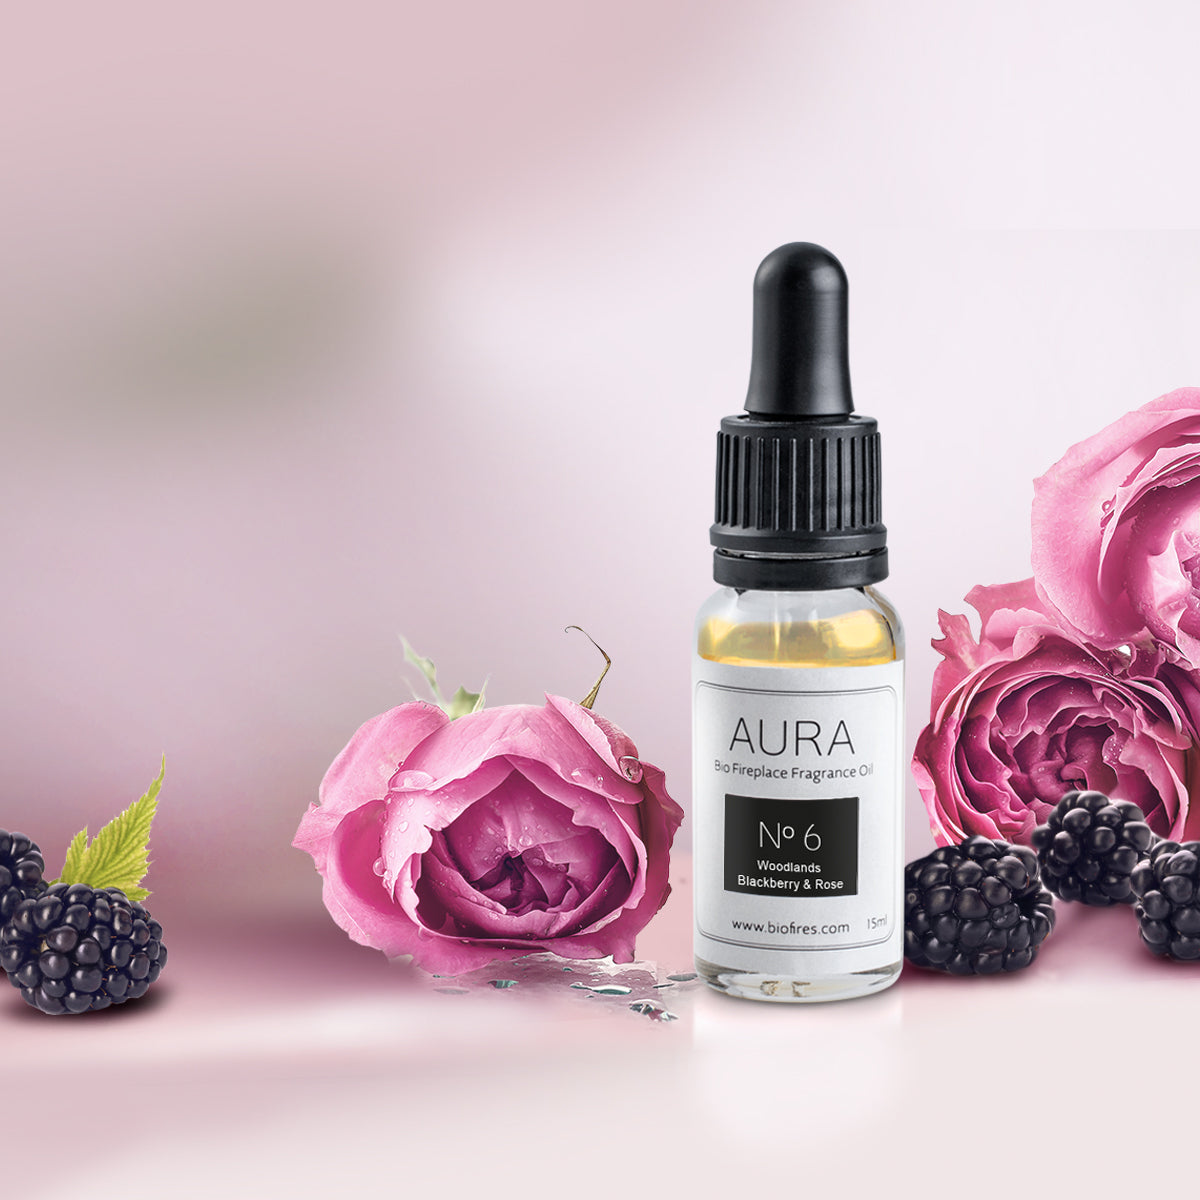 Aura No.6 – Woodlands Blackberry & Rose Fragrance Oil